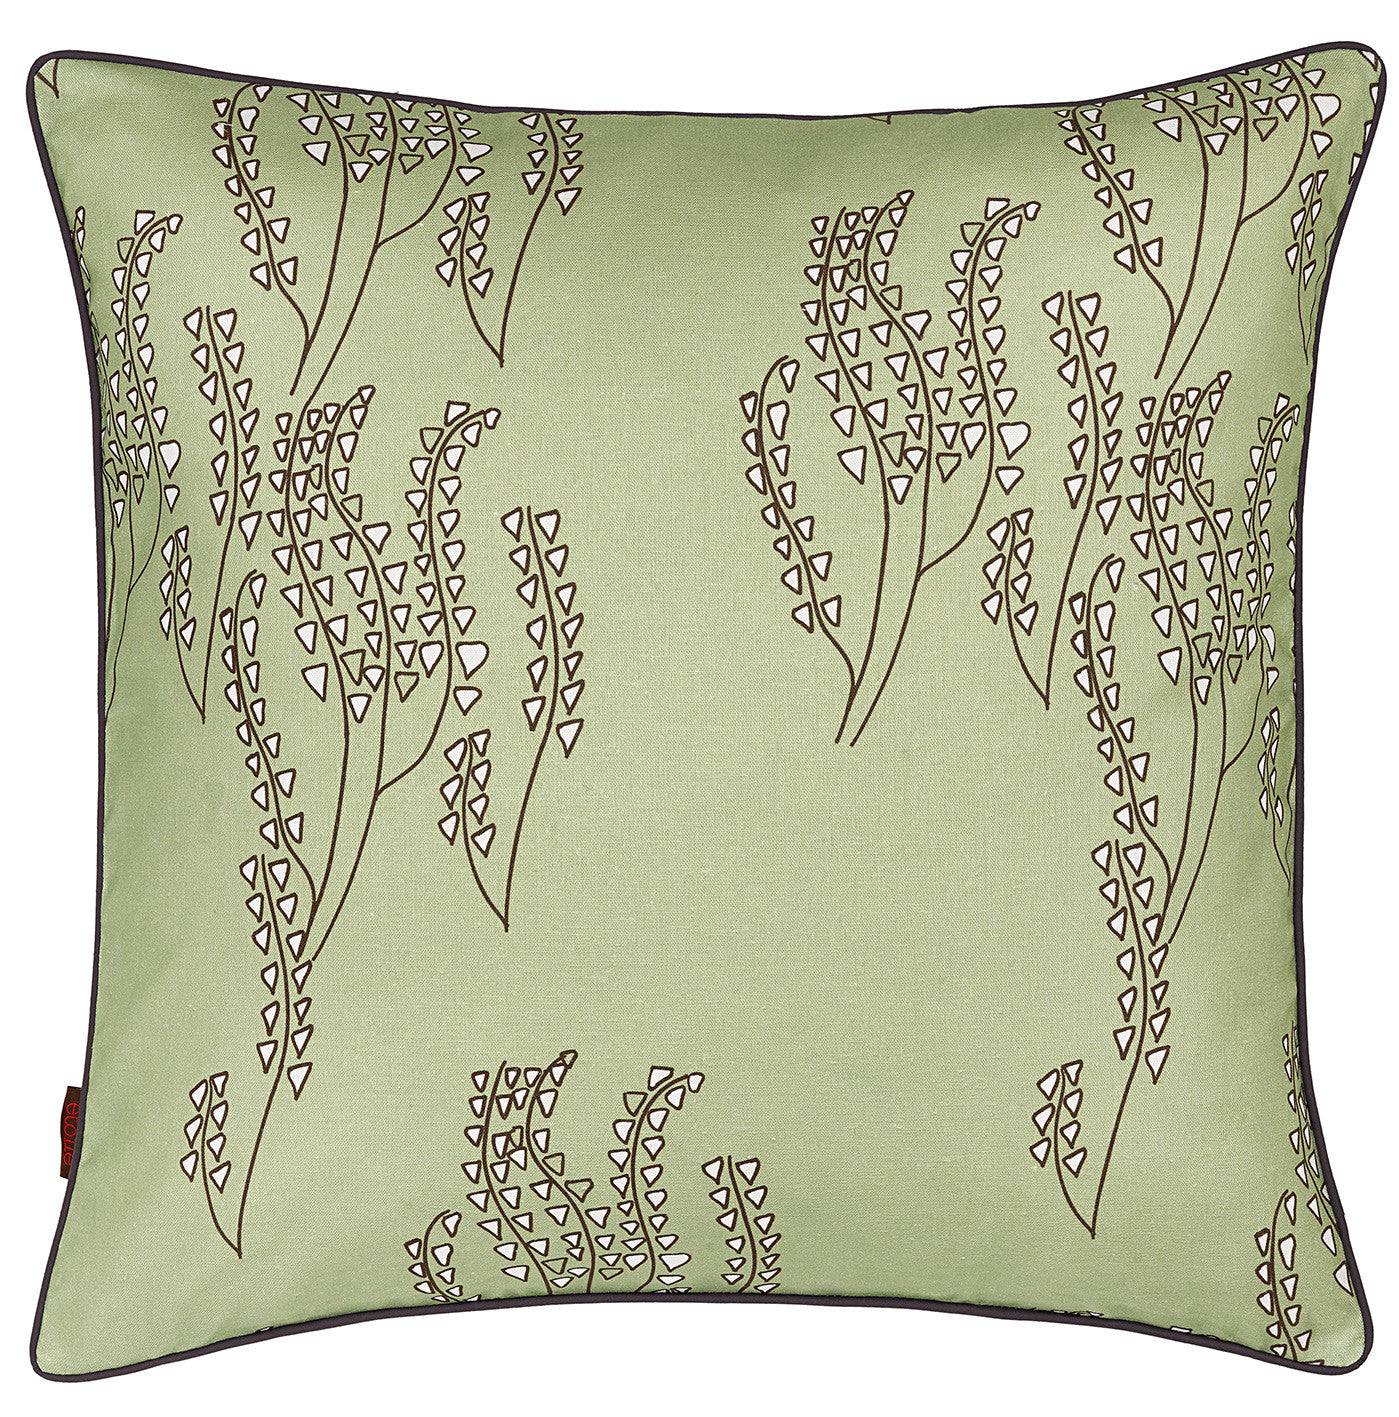 Yuma Grass Pattern Linen Throw Pillow in Light Eau de Nil Green ships from Canada to USA